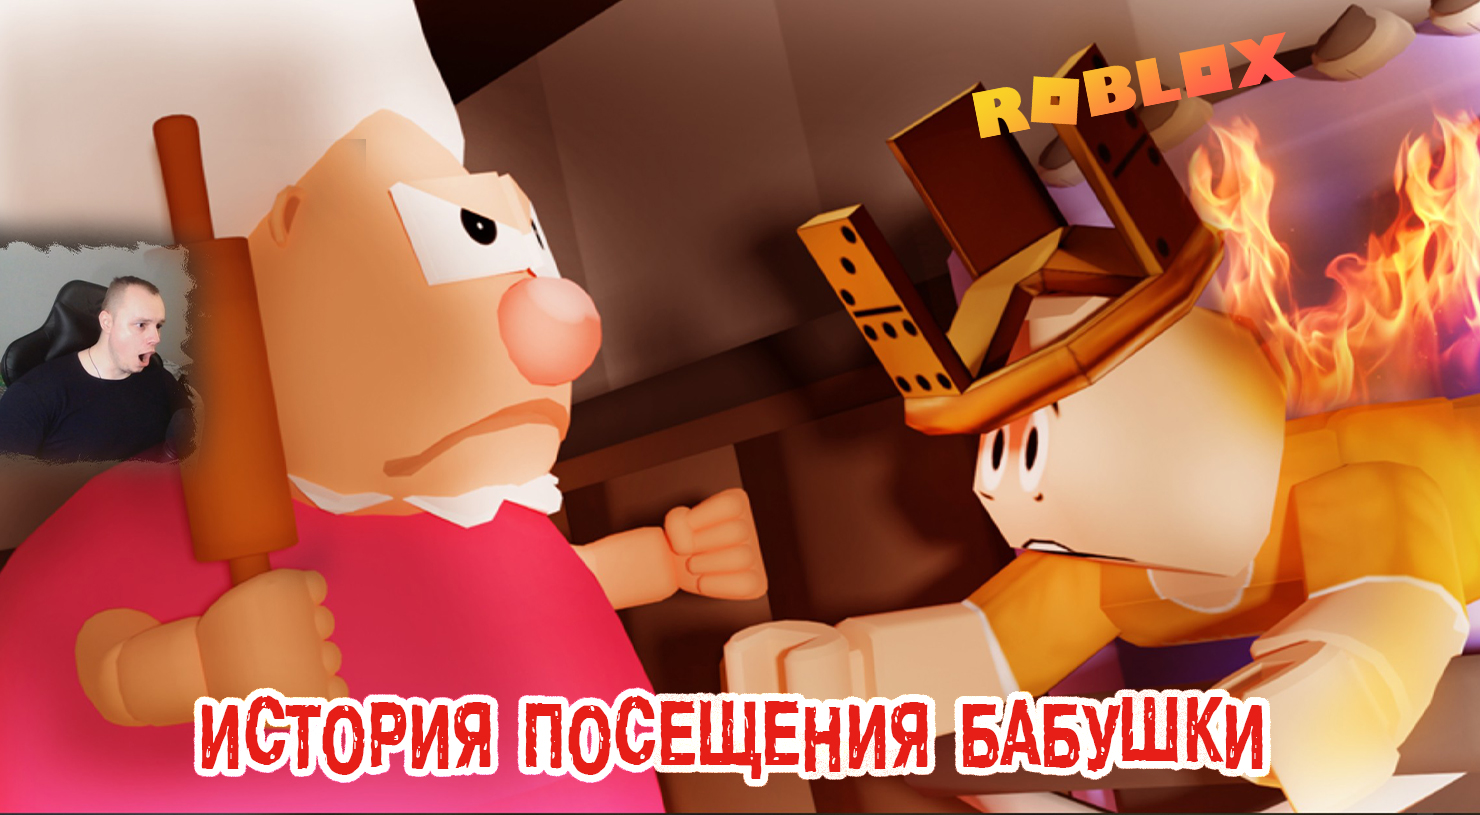 Roblox ➤ История посещения бабушки ➤ Прохождение игры Роблокс Grandma Visit Story